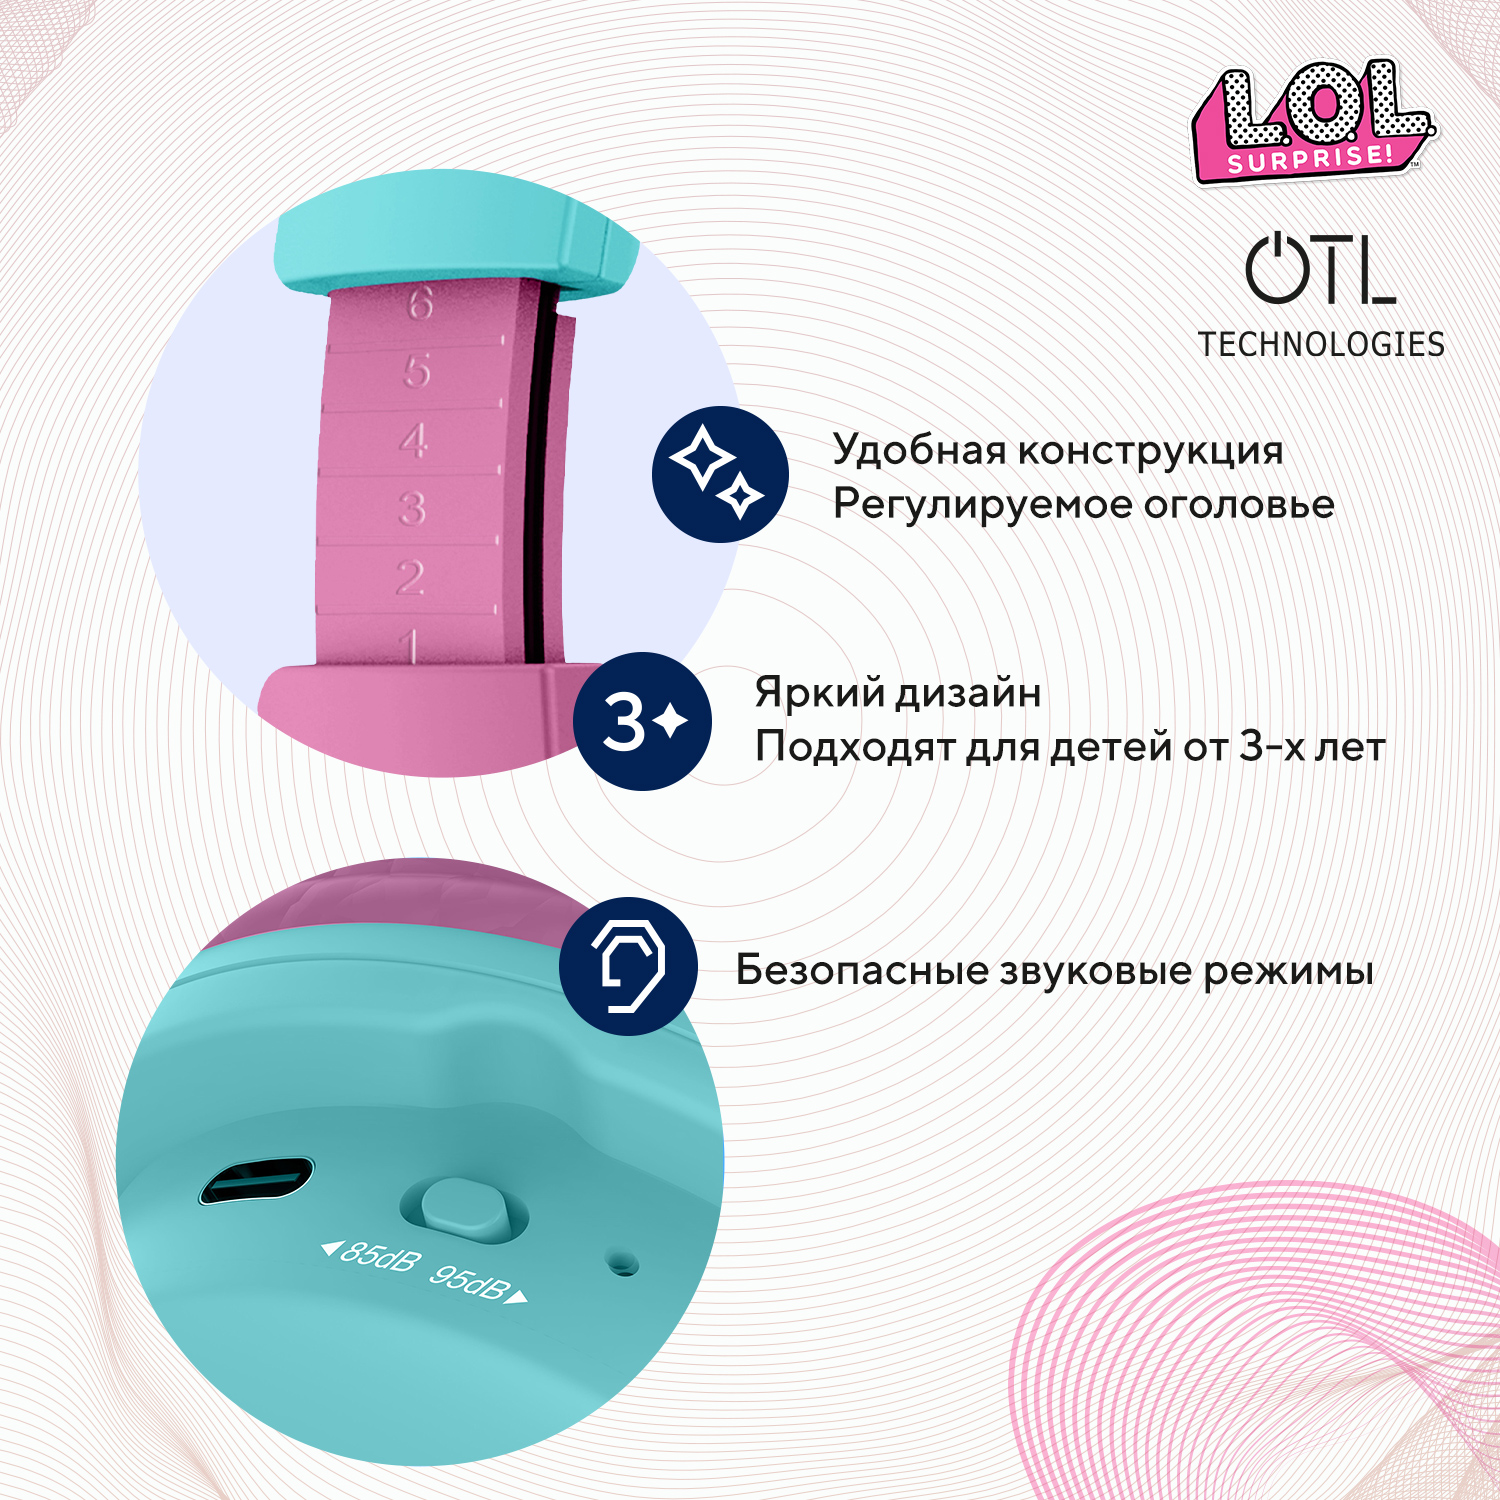 Наушники беспроводные OTL Technologies детские L.O.L. Surprise - фото 3